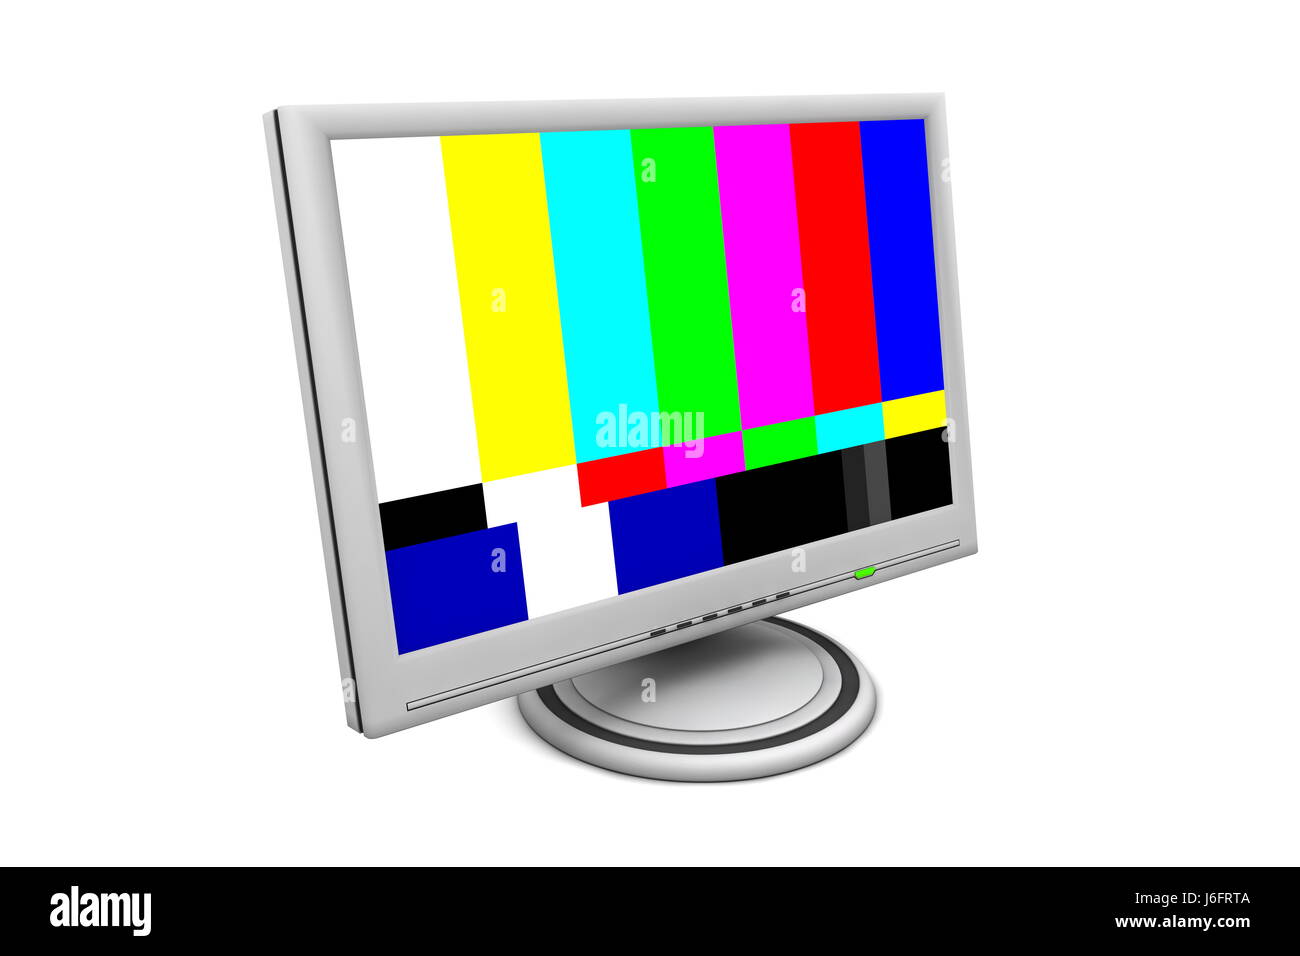 Bildschirm Fernseher tv Fernseher Muster Computer Computer Test Büro zu überwachen Stockfoto